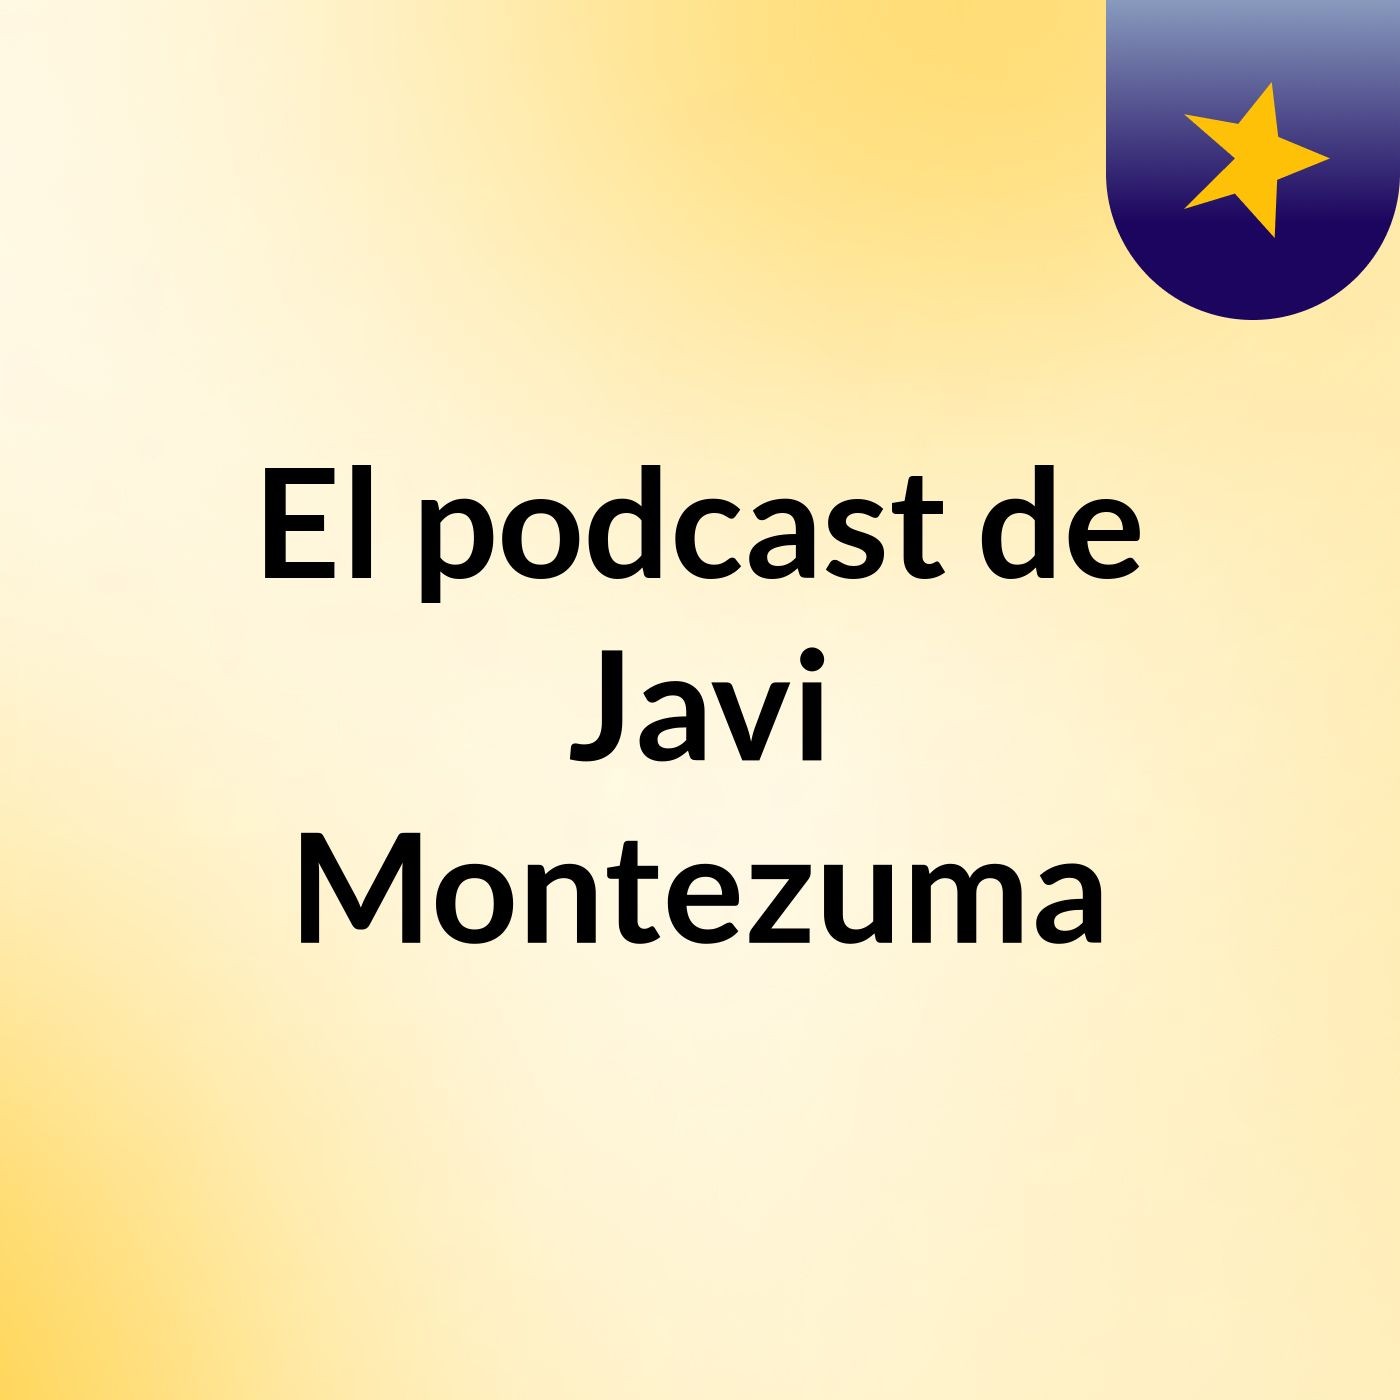 El podcast de Javi Montezuma